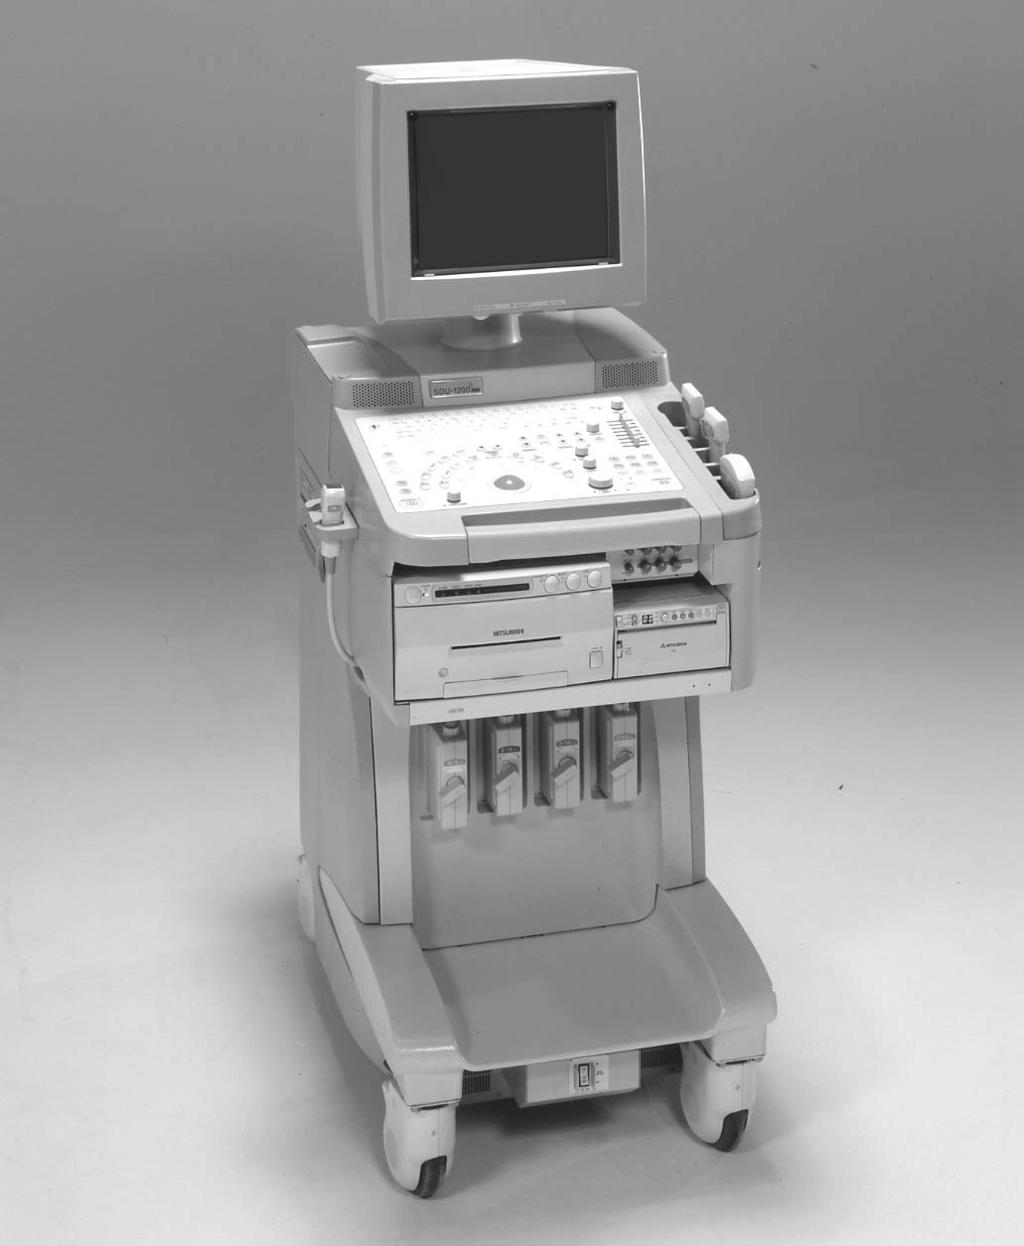 PD579-012A Diagnostic Ultrasound System SDU-1200Pro GENERAL DESCRIPTION The Shimadzu SDU-1200Pro platform is the latest addition to the Shimadzu family of ultrasound platforms designed to produce